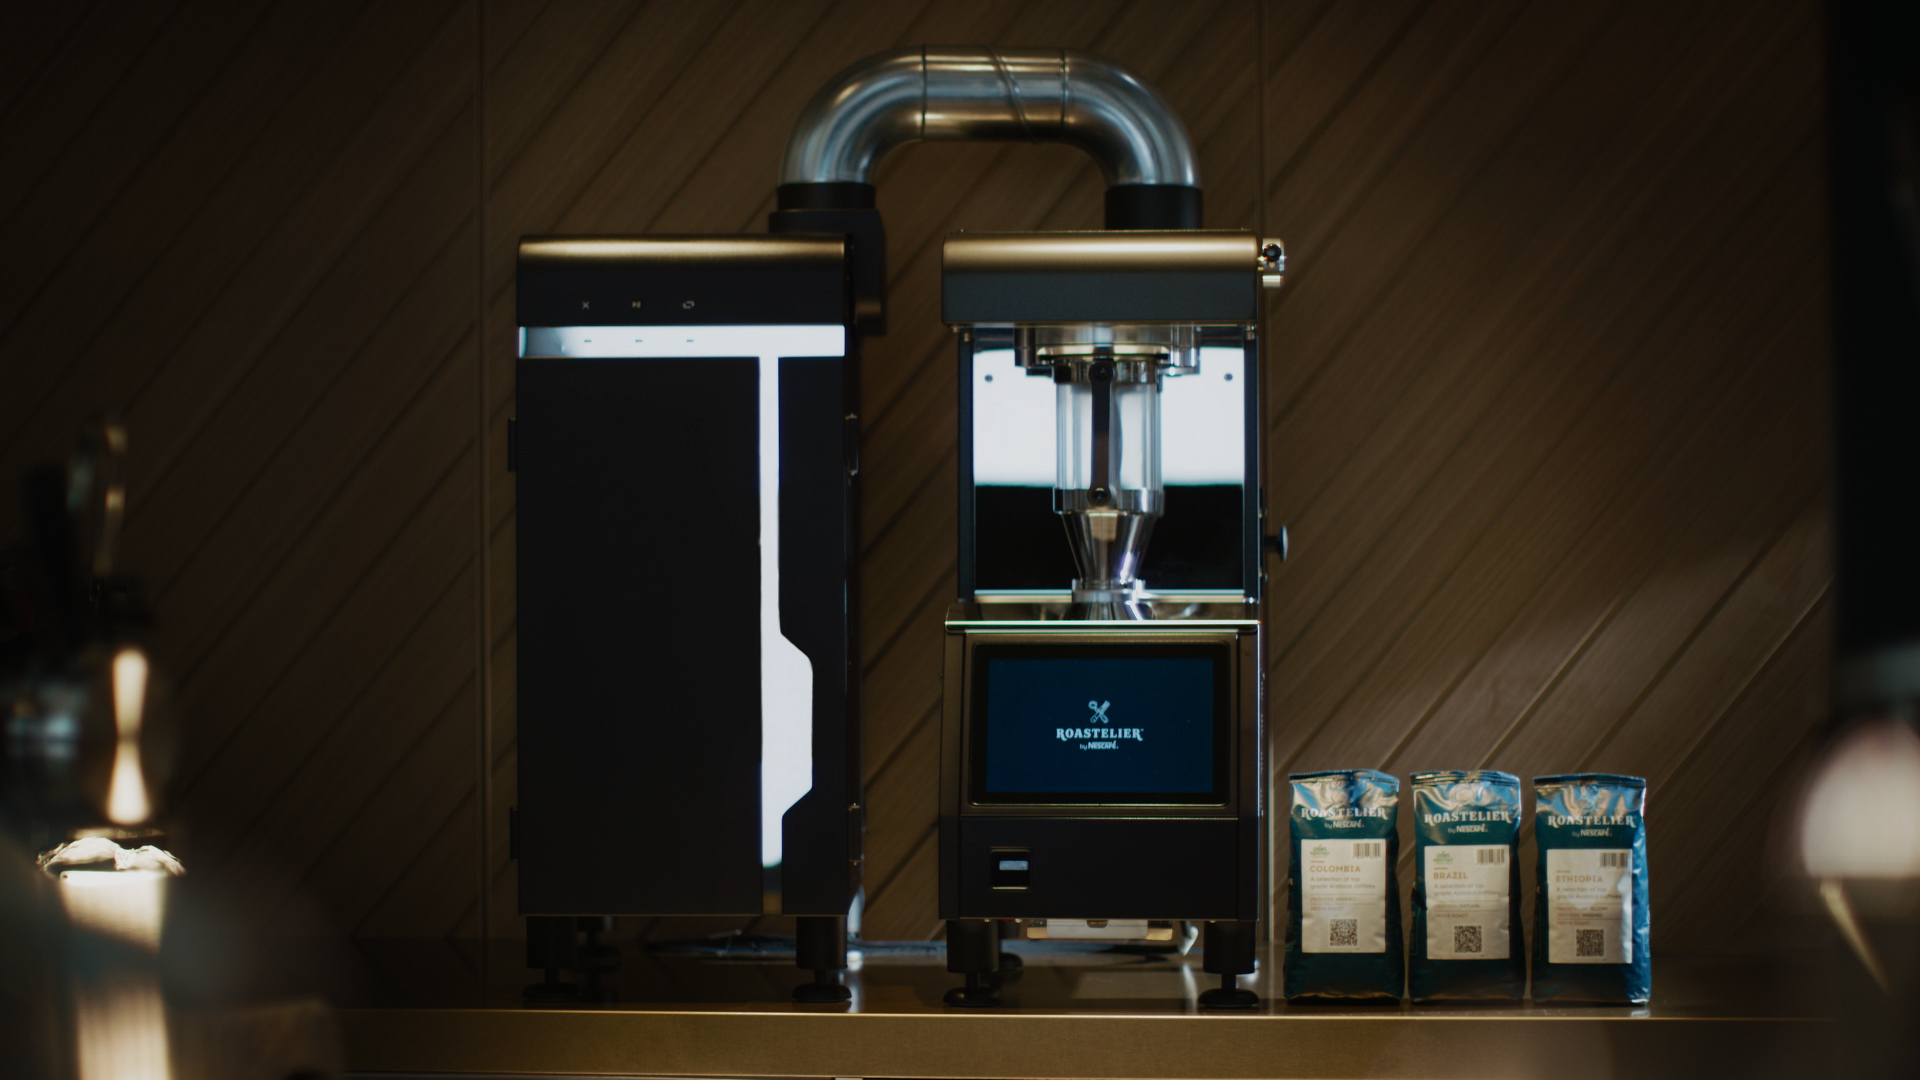 ヨーロッパから日本初上陸 外食店向けプレミアムコーヒーの新サービス Roastelier By Nescafe 3月23日 火 より全国で提供開始 ネスレ日本株式会社のプレスリリース